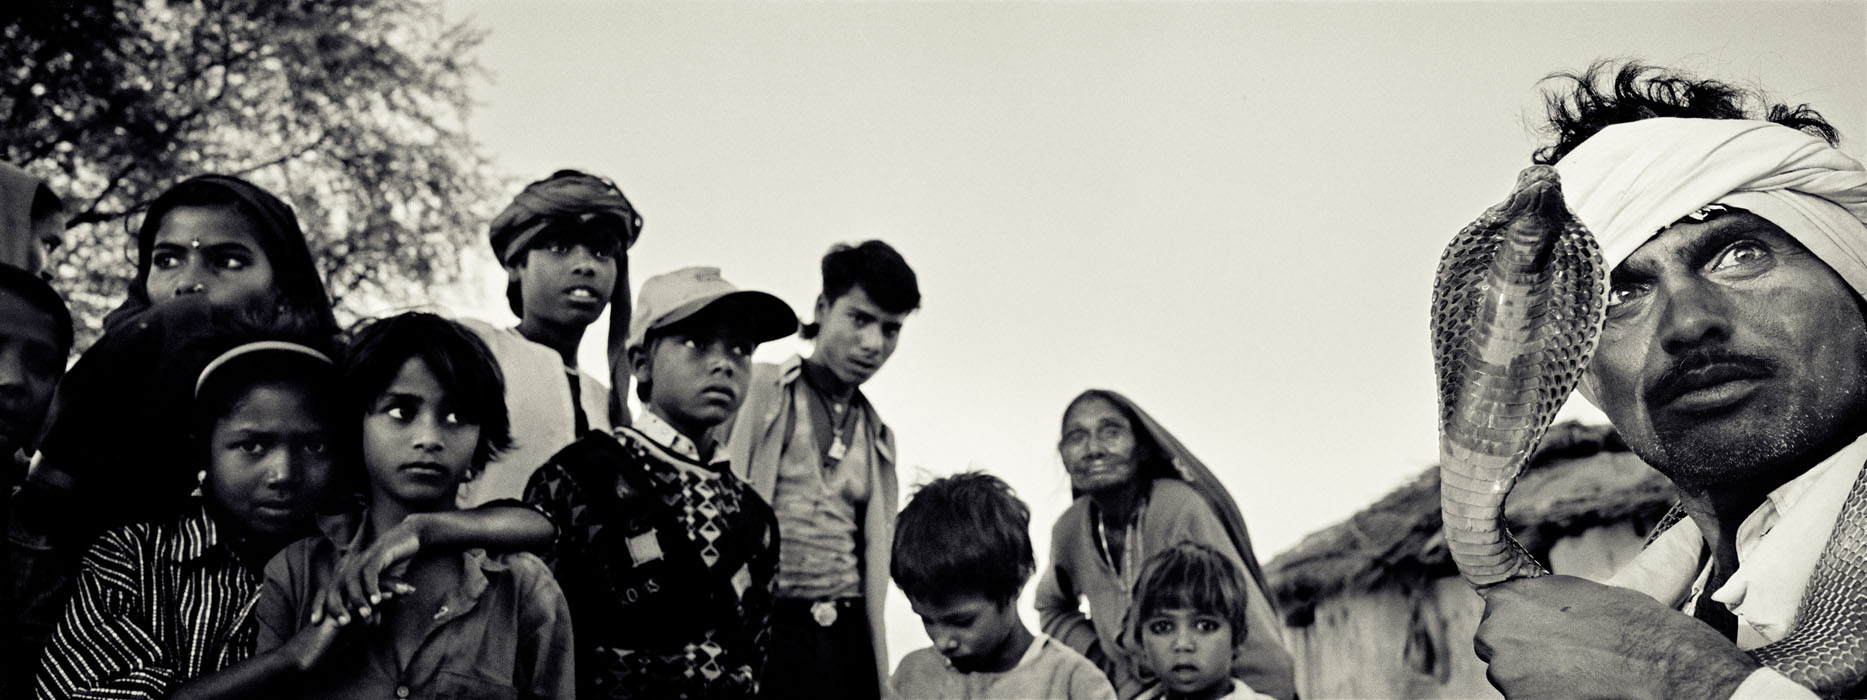 Les roms, un peuple sans frontières, Khurra, Rajasthan, Inde